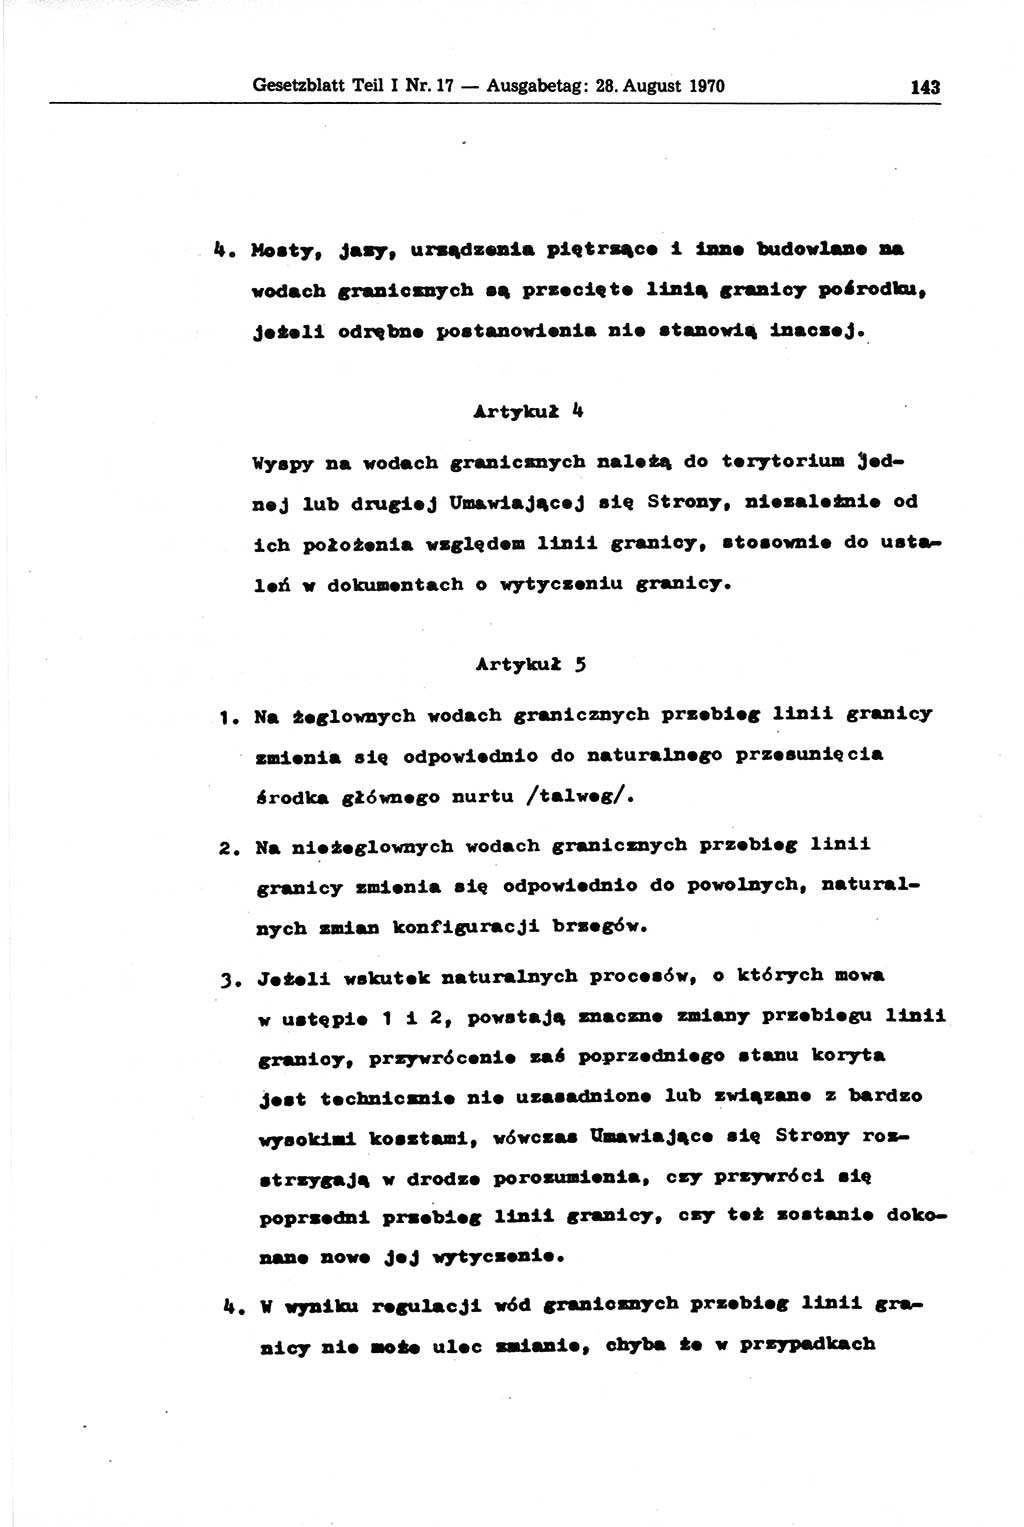 Gesetzblatt (GBl.) der Deutschen Demokratischen Republik (DDR) Teil Ⅰ 1970, Seite 143 (GBl. DDR Ⅰ 1970, S. 143)